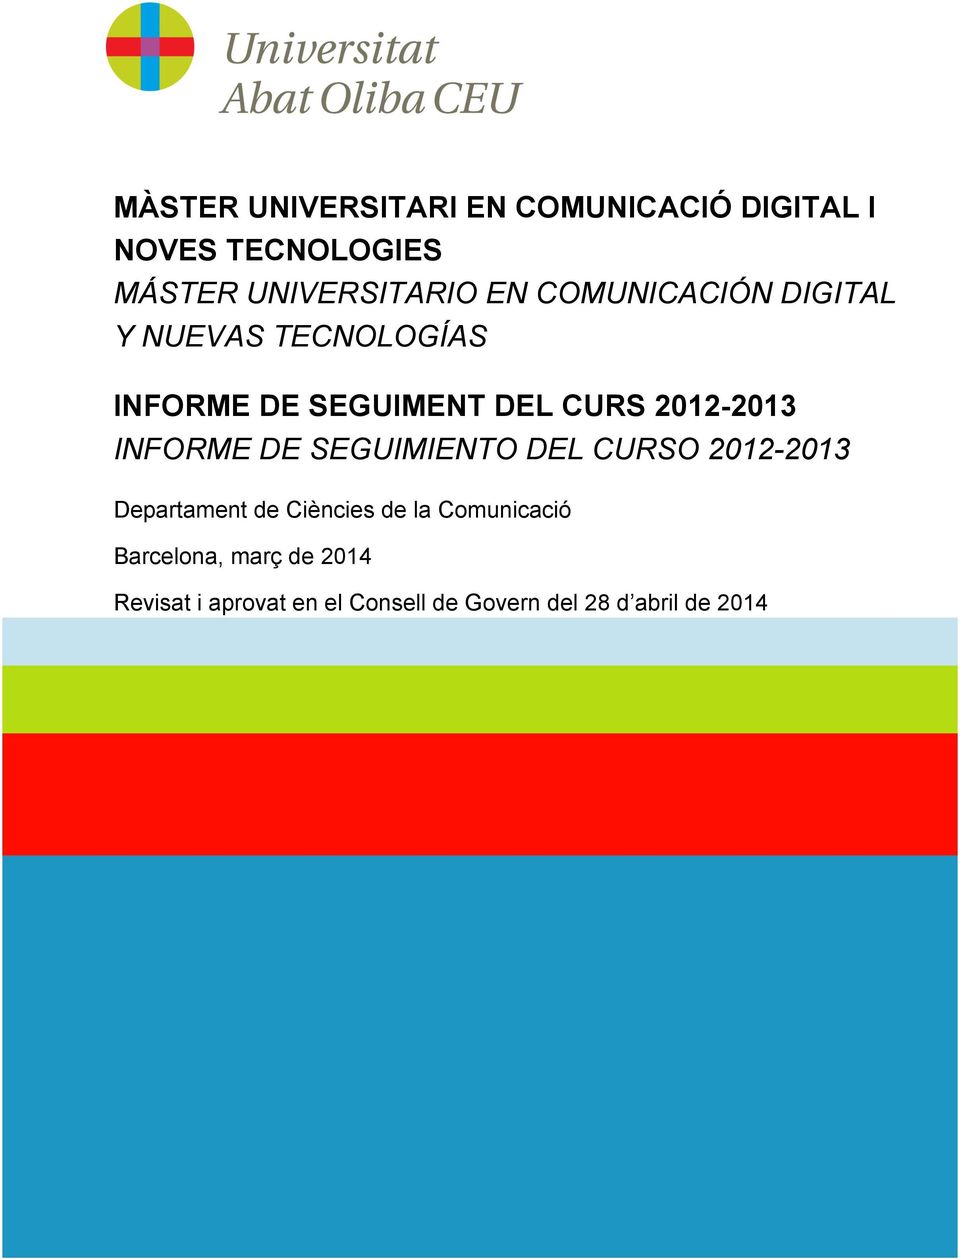 INFORME DE SEGUIMIENTO DEL CURSO 2012-2013 Departament de Ciències de la Comunicació